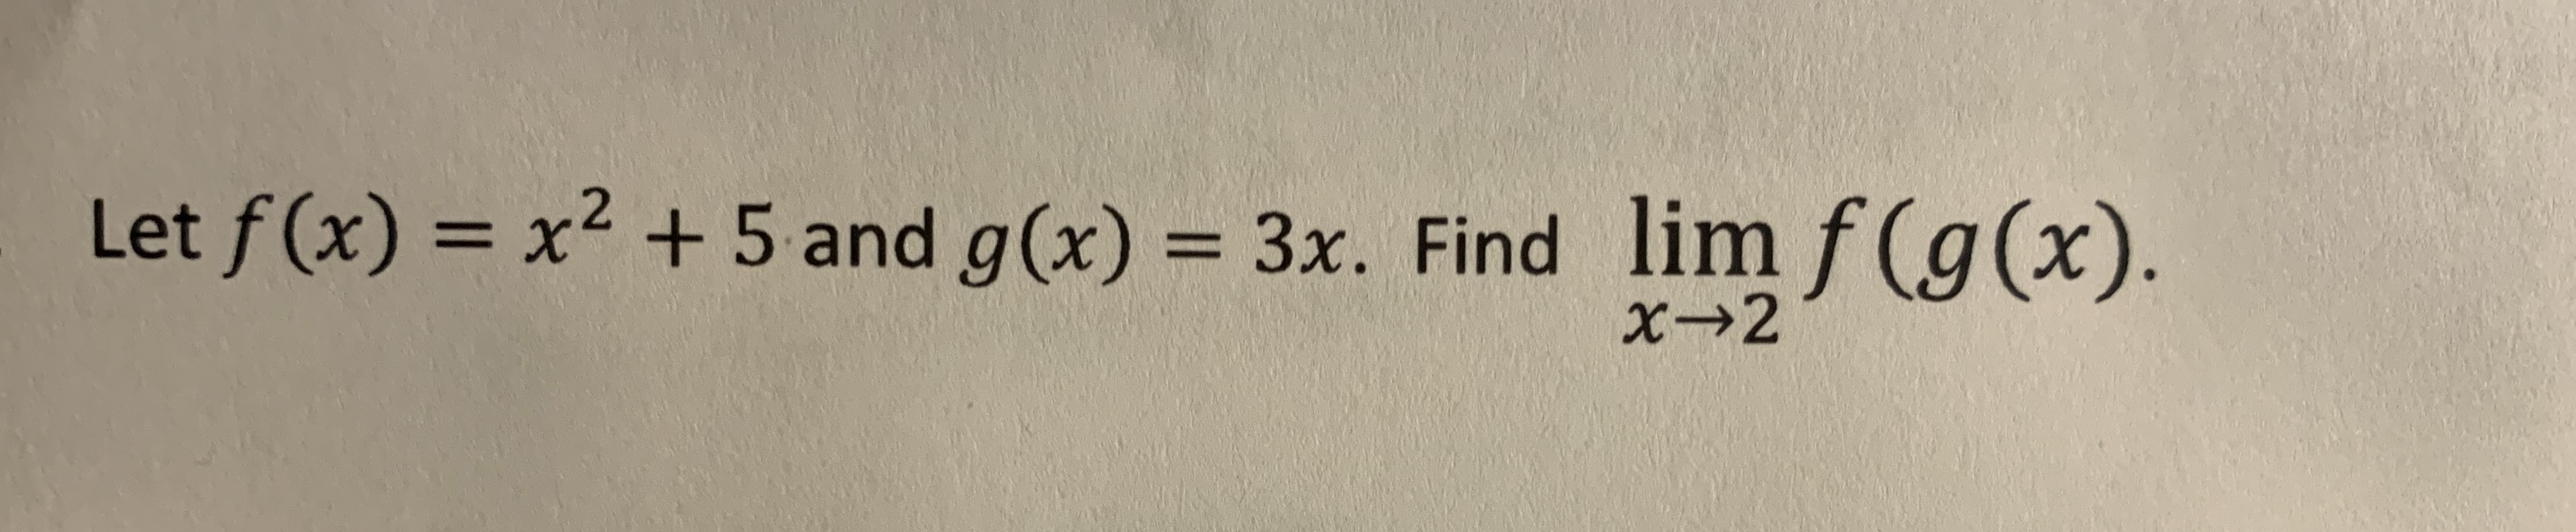 Let f(x) = x² + 5 and g(x) = 3x. Find lim f(g(x).
%3D
%3D
